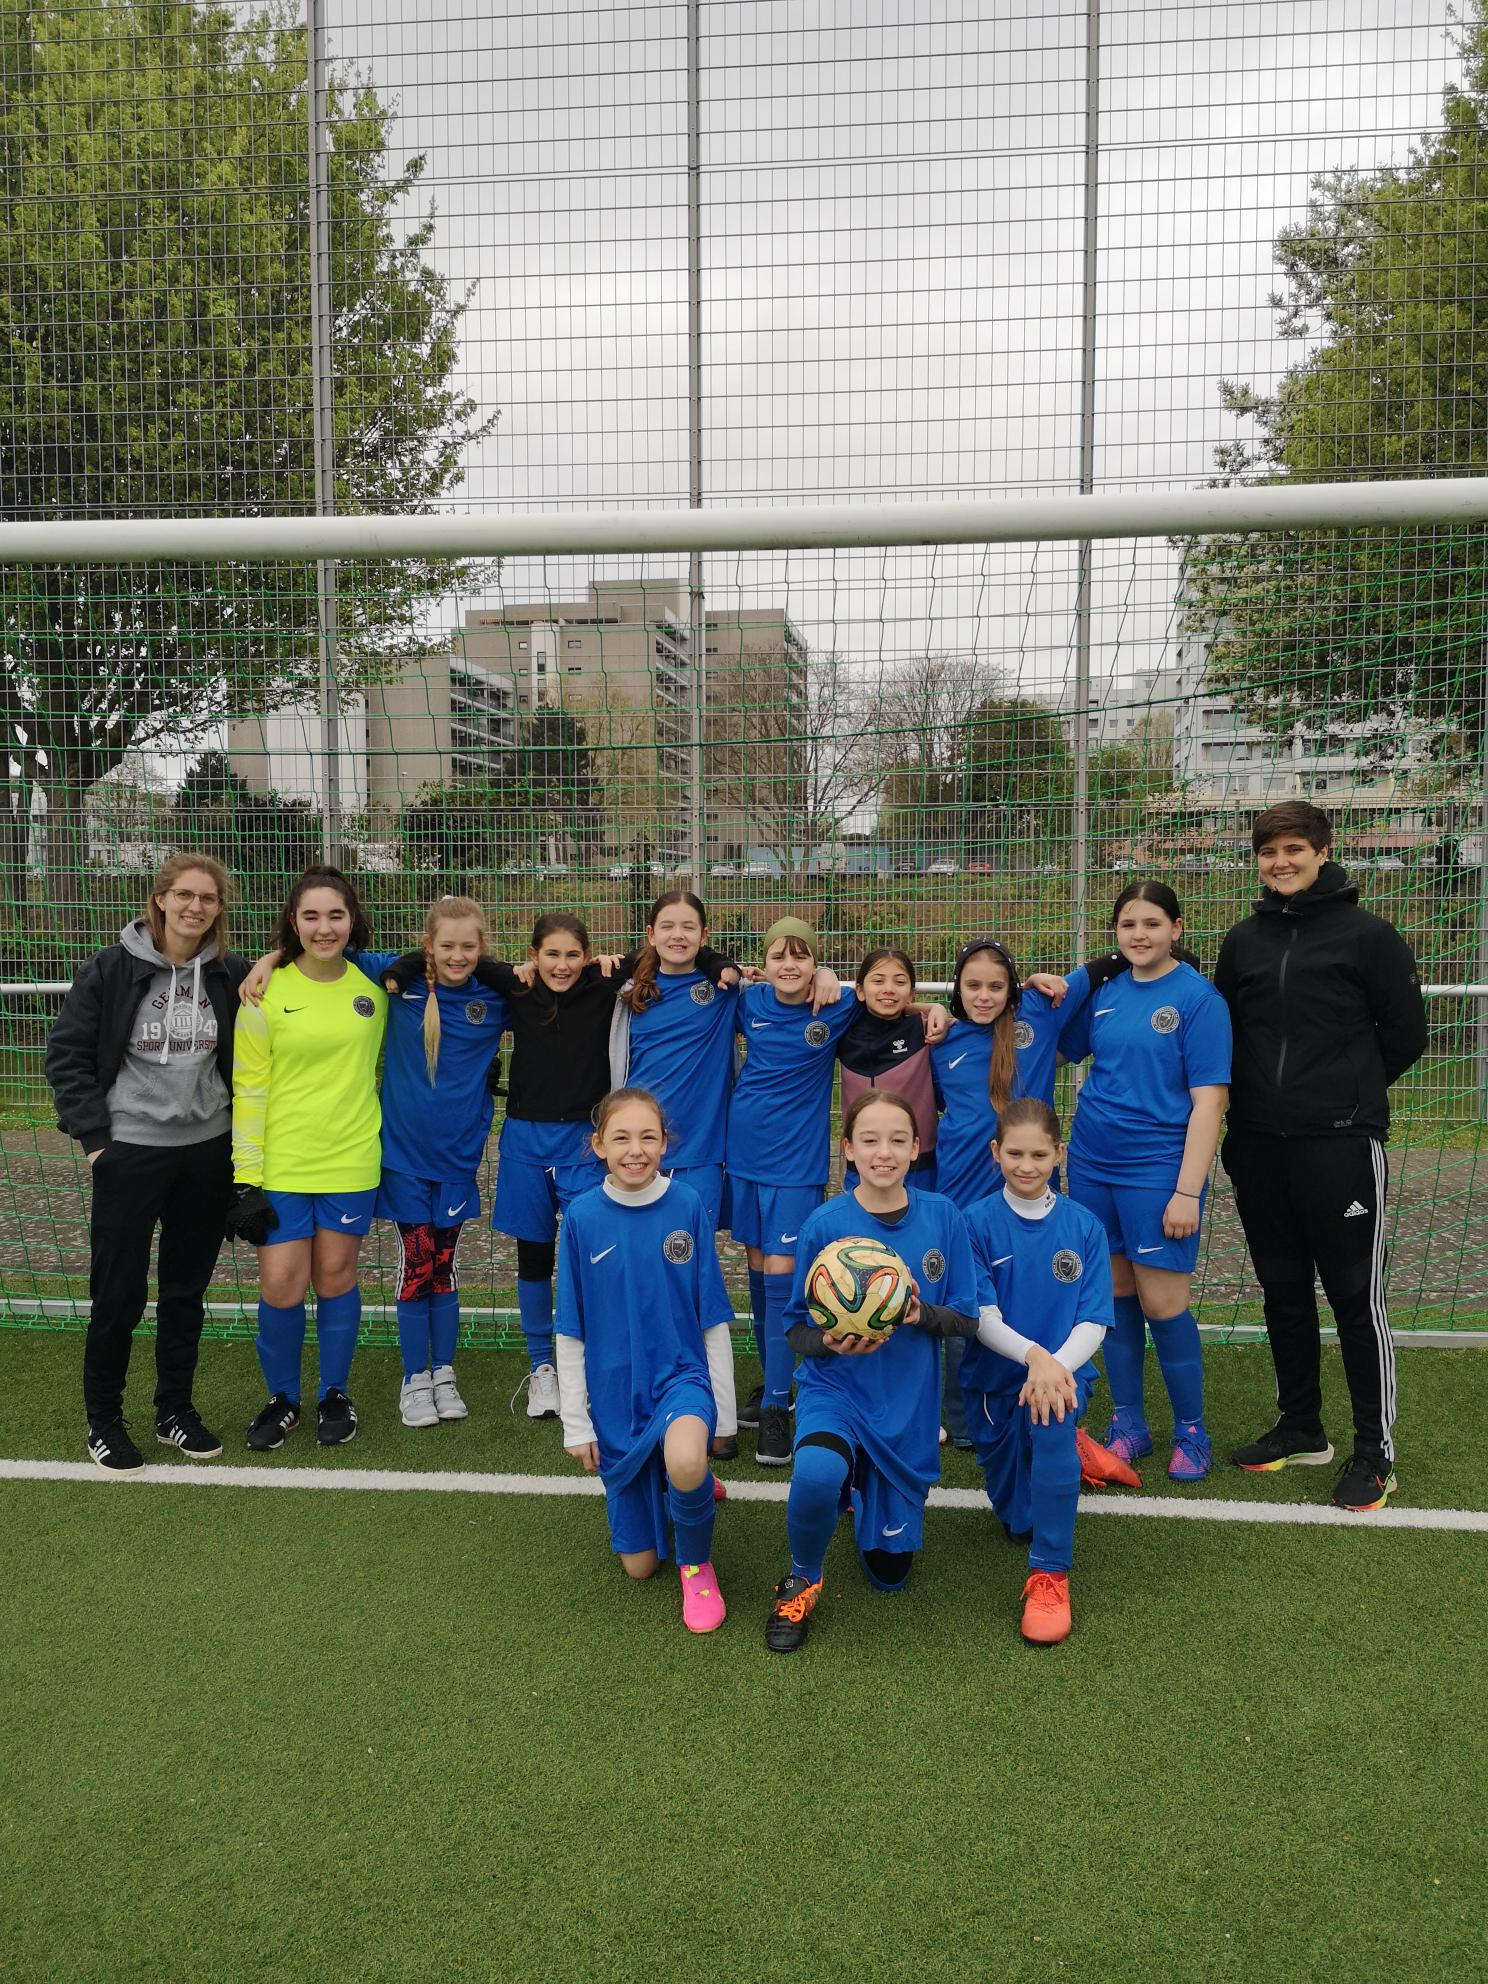 Stadtmeisterschaften im Fußball der U13 Mädchen: Fairplay & Teamgeist im Fokus